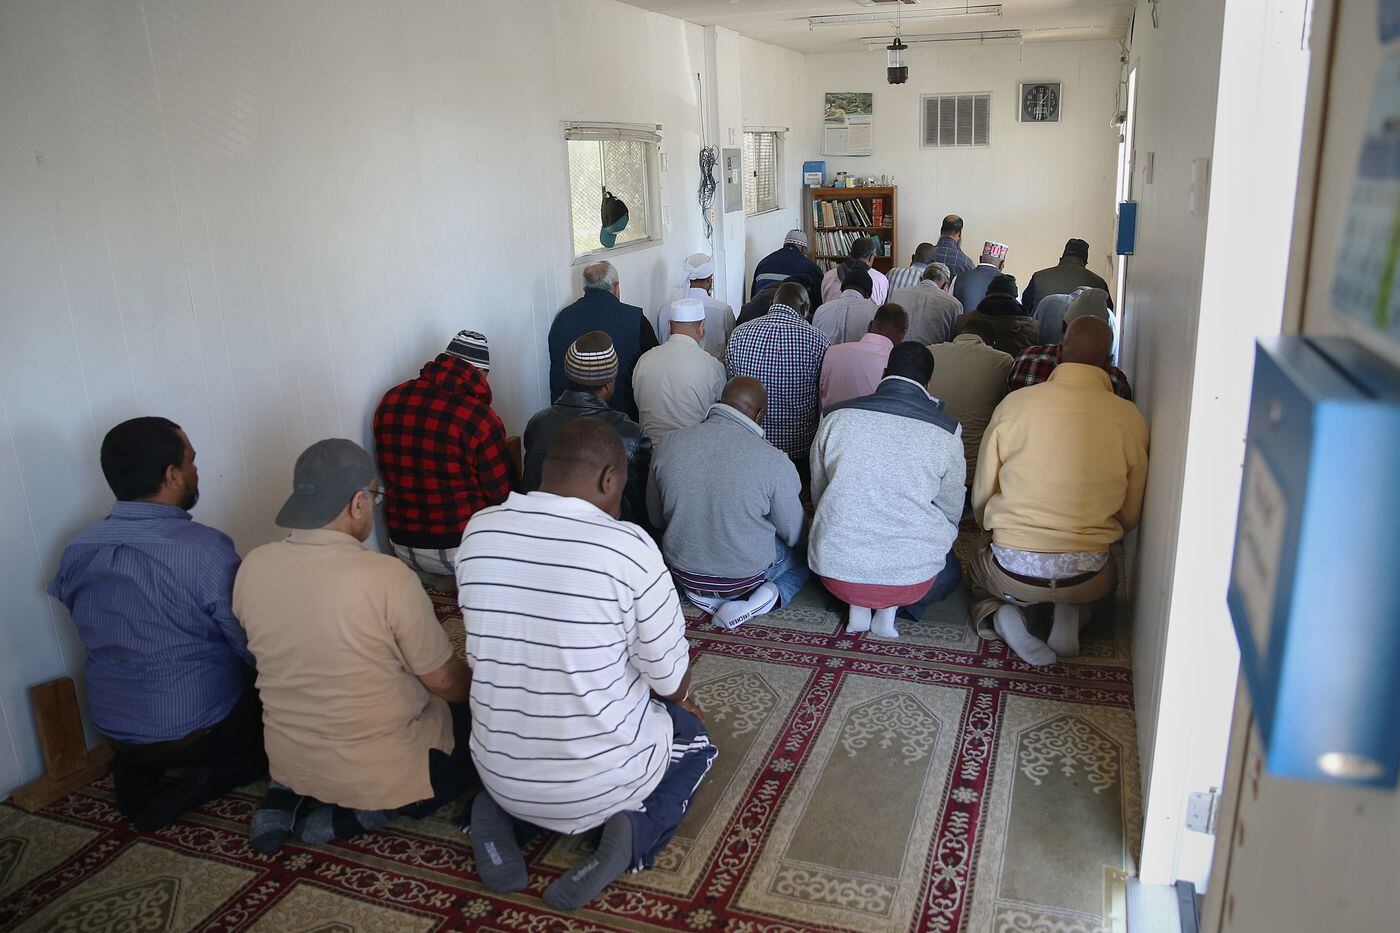 ÐÐ°ÑÑÐ¸Ð½ÐºÐ¸ Ð¿Ð¾ Ð·Ð°Ð¿ÑÐ¾ÑÑ Phillyâs Muslim cabbiesâ ingenuity and community build a mosque at the airport